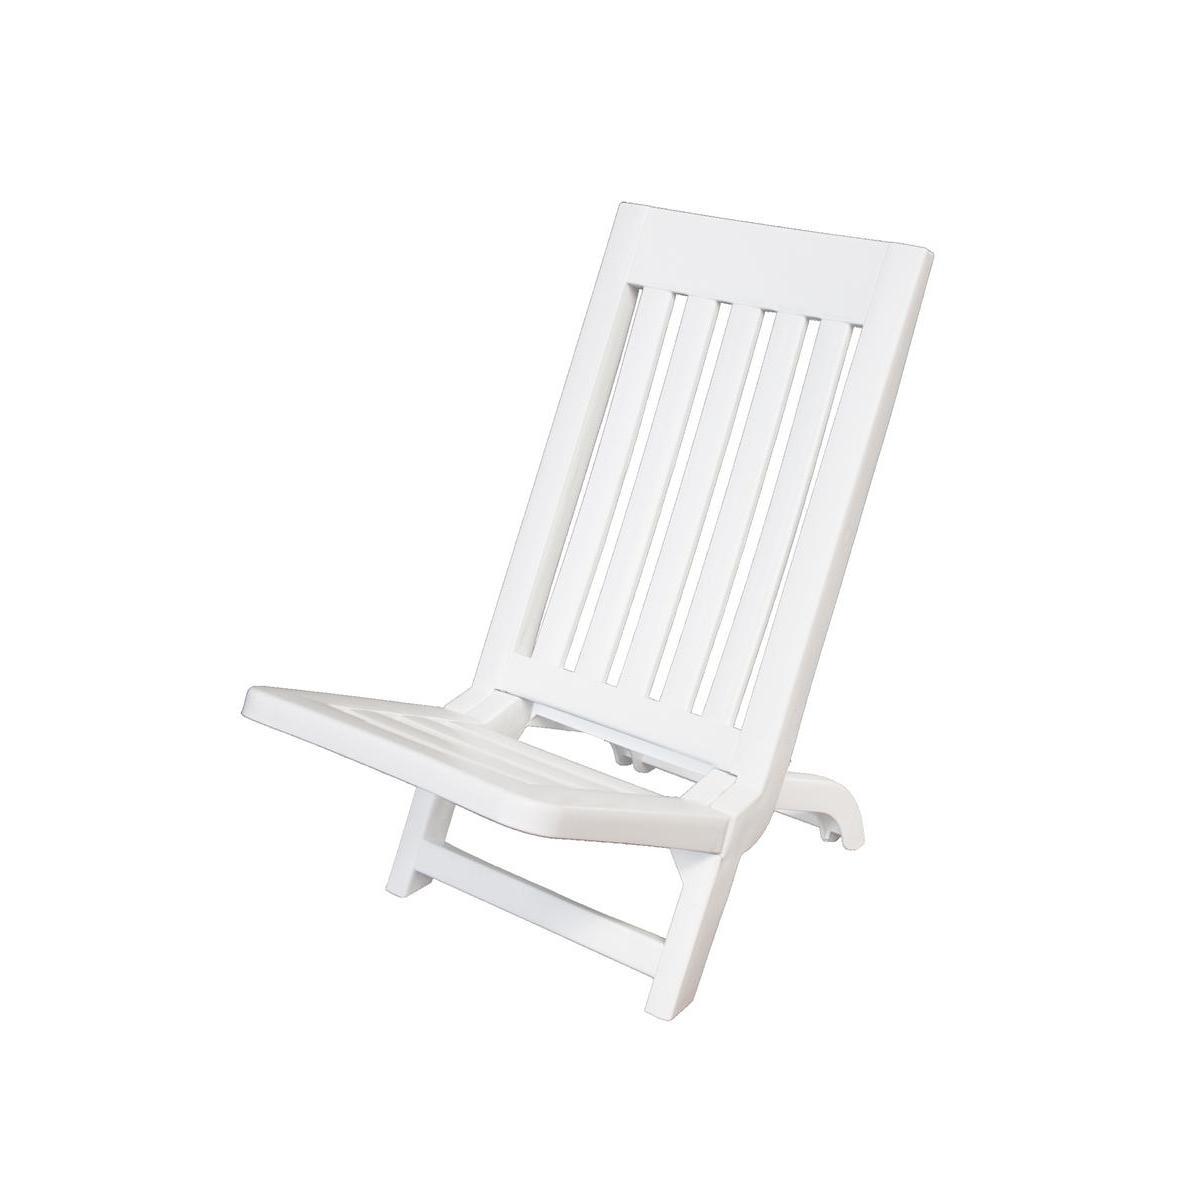 Chaise de plage pliante - Polypropylène - 35 x 56 x H 60 cm - Blanc